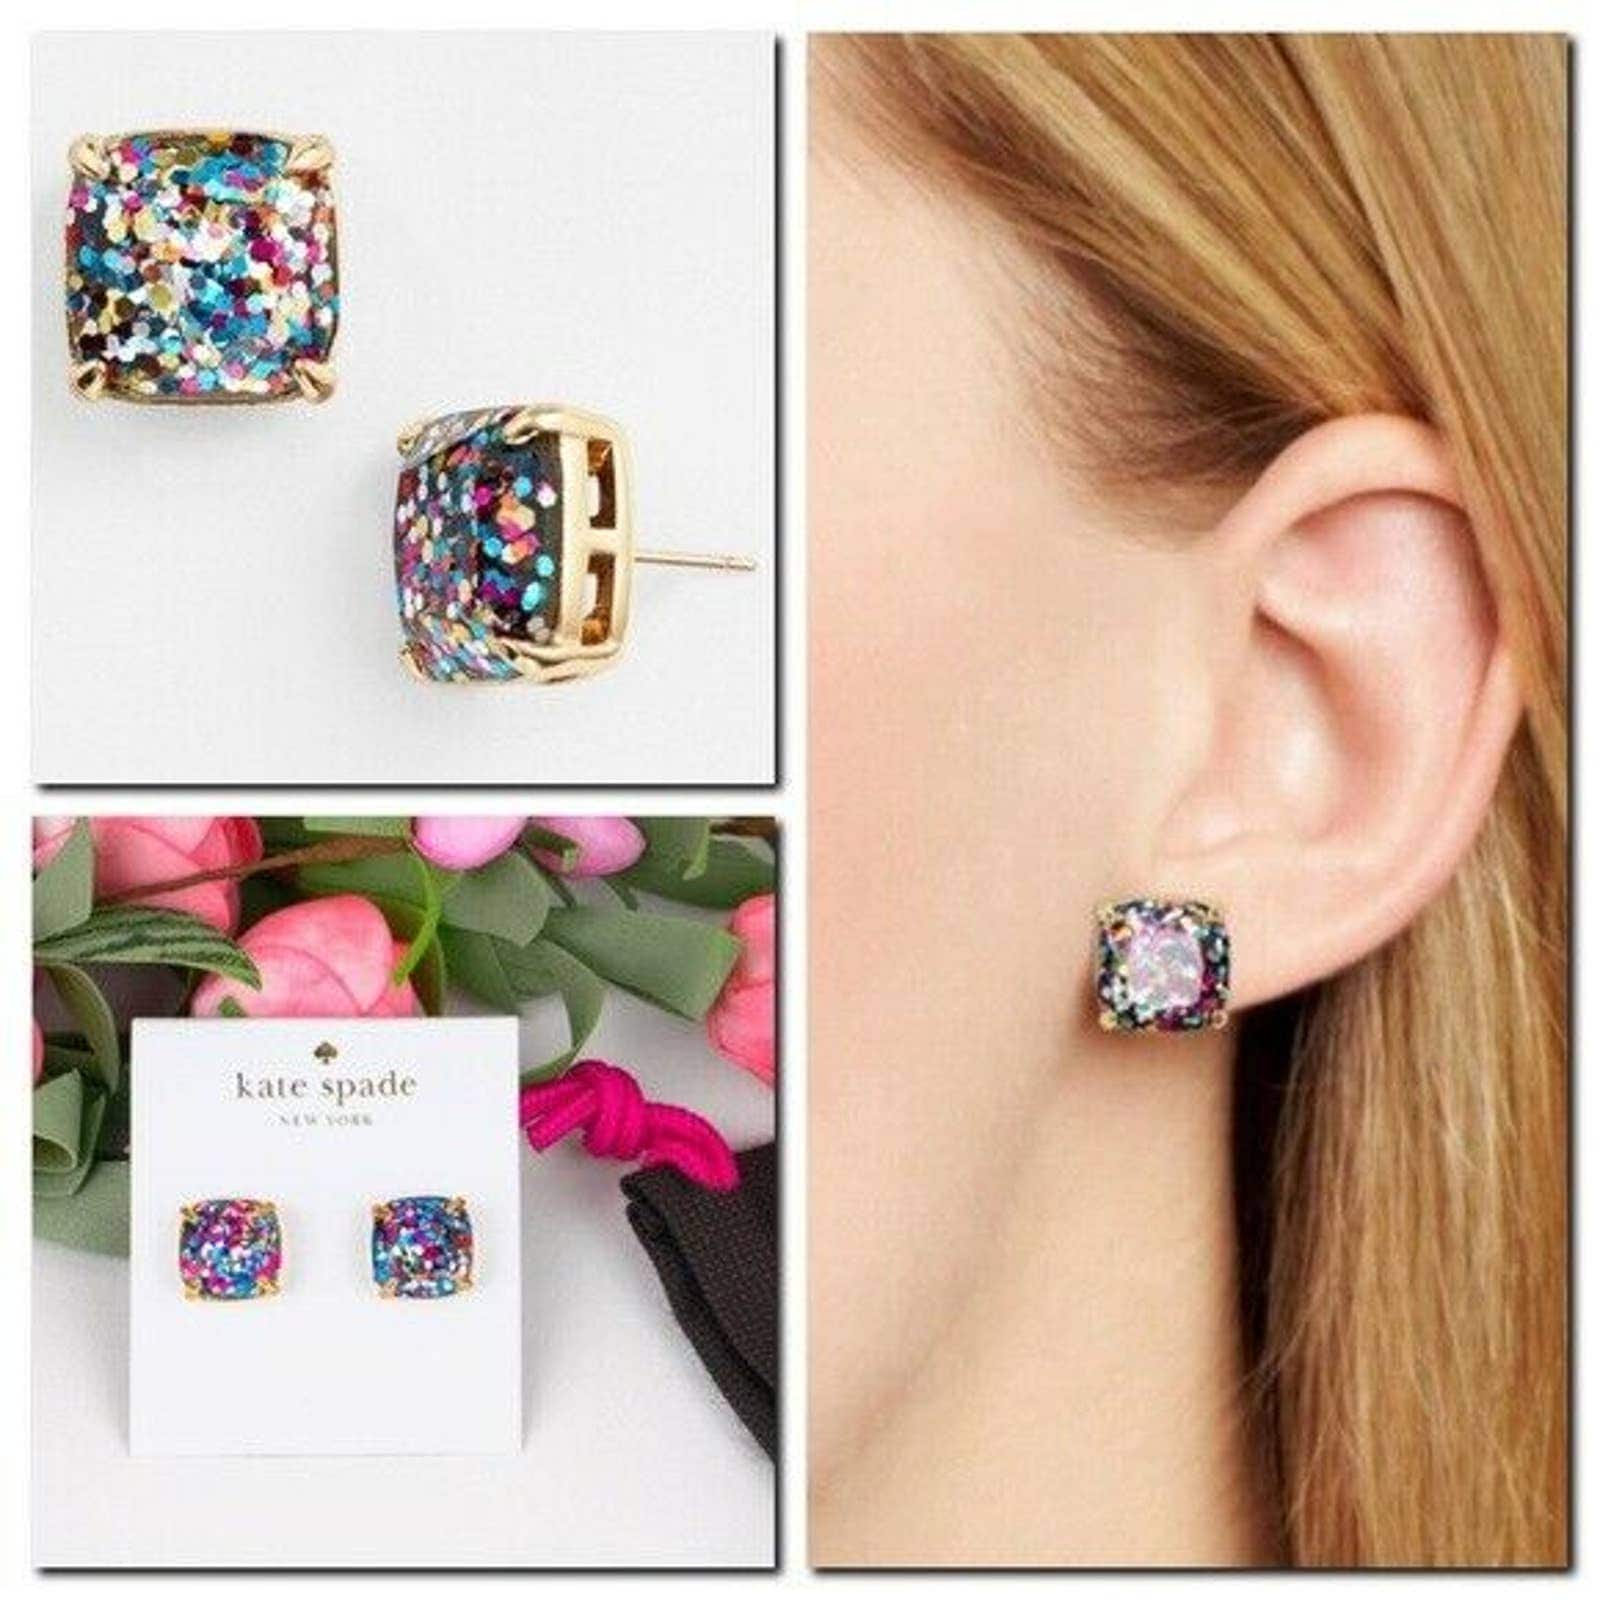 Kate Spade New York Glitter Square Stud Earrings Multicolor - Etsy